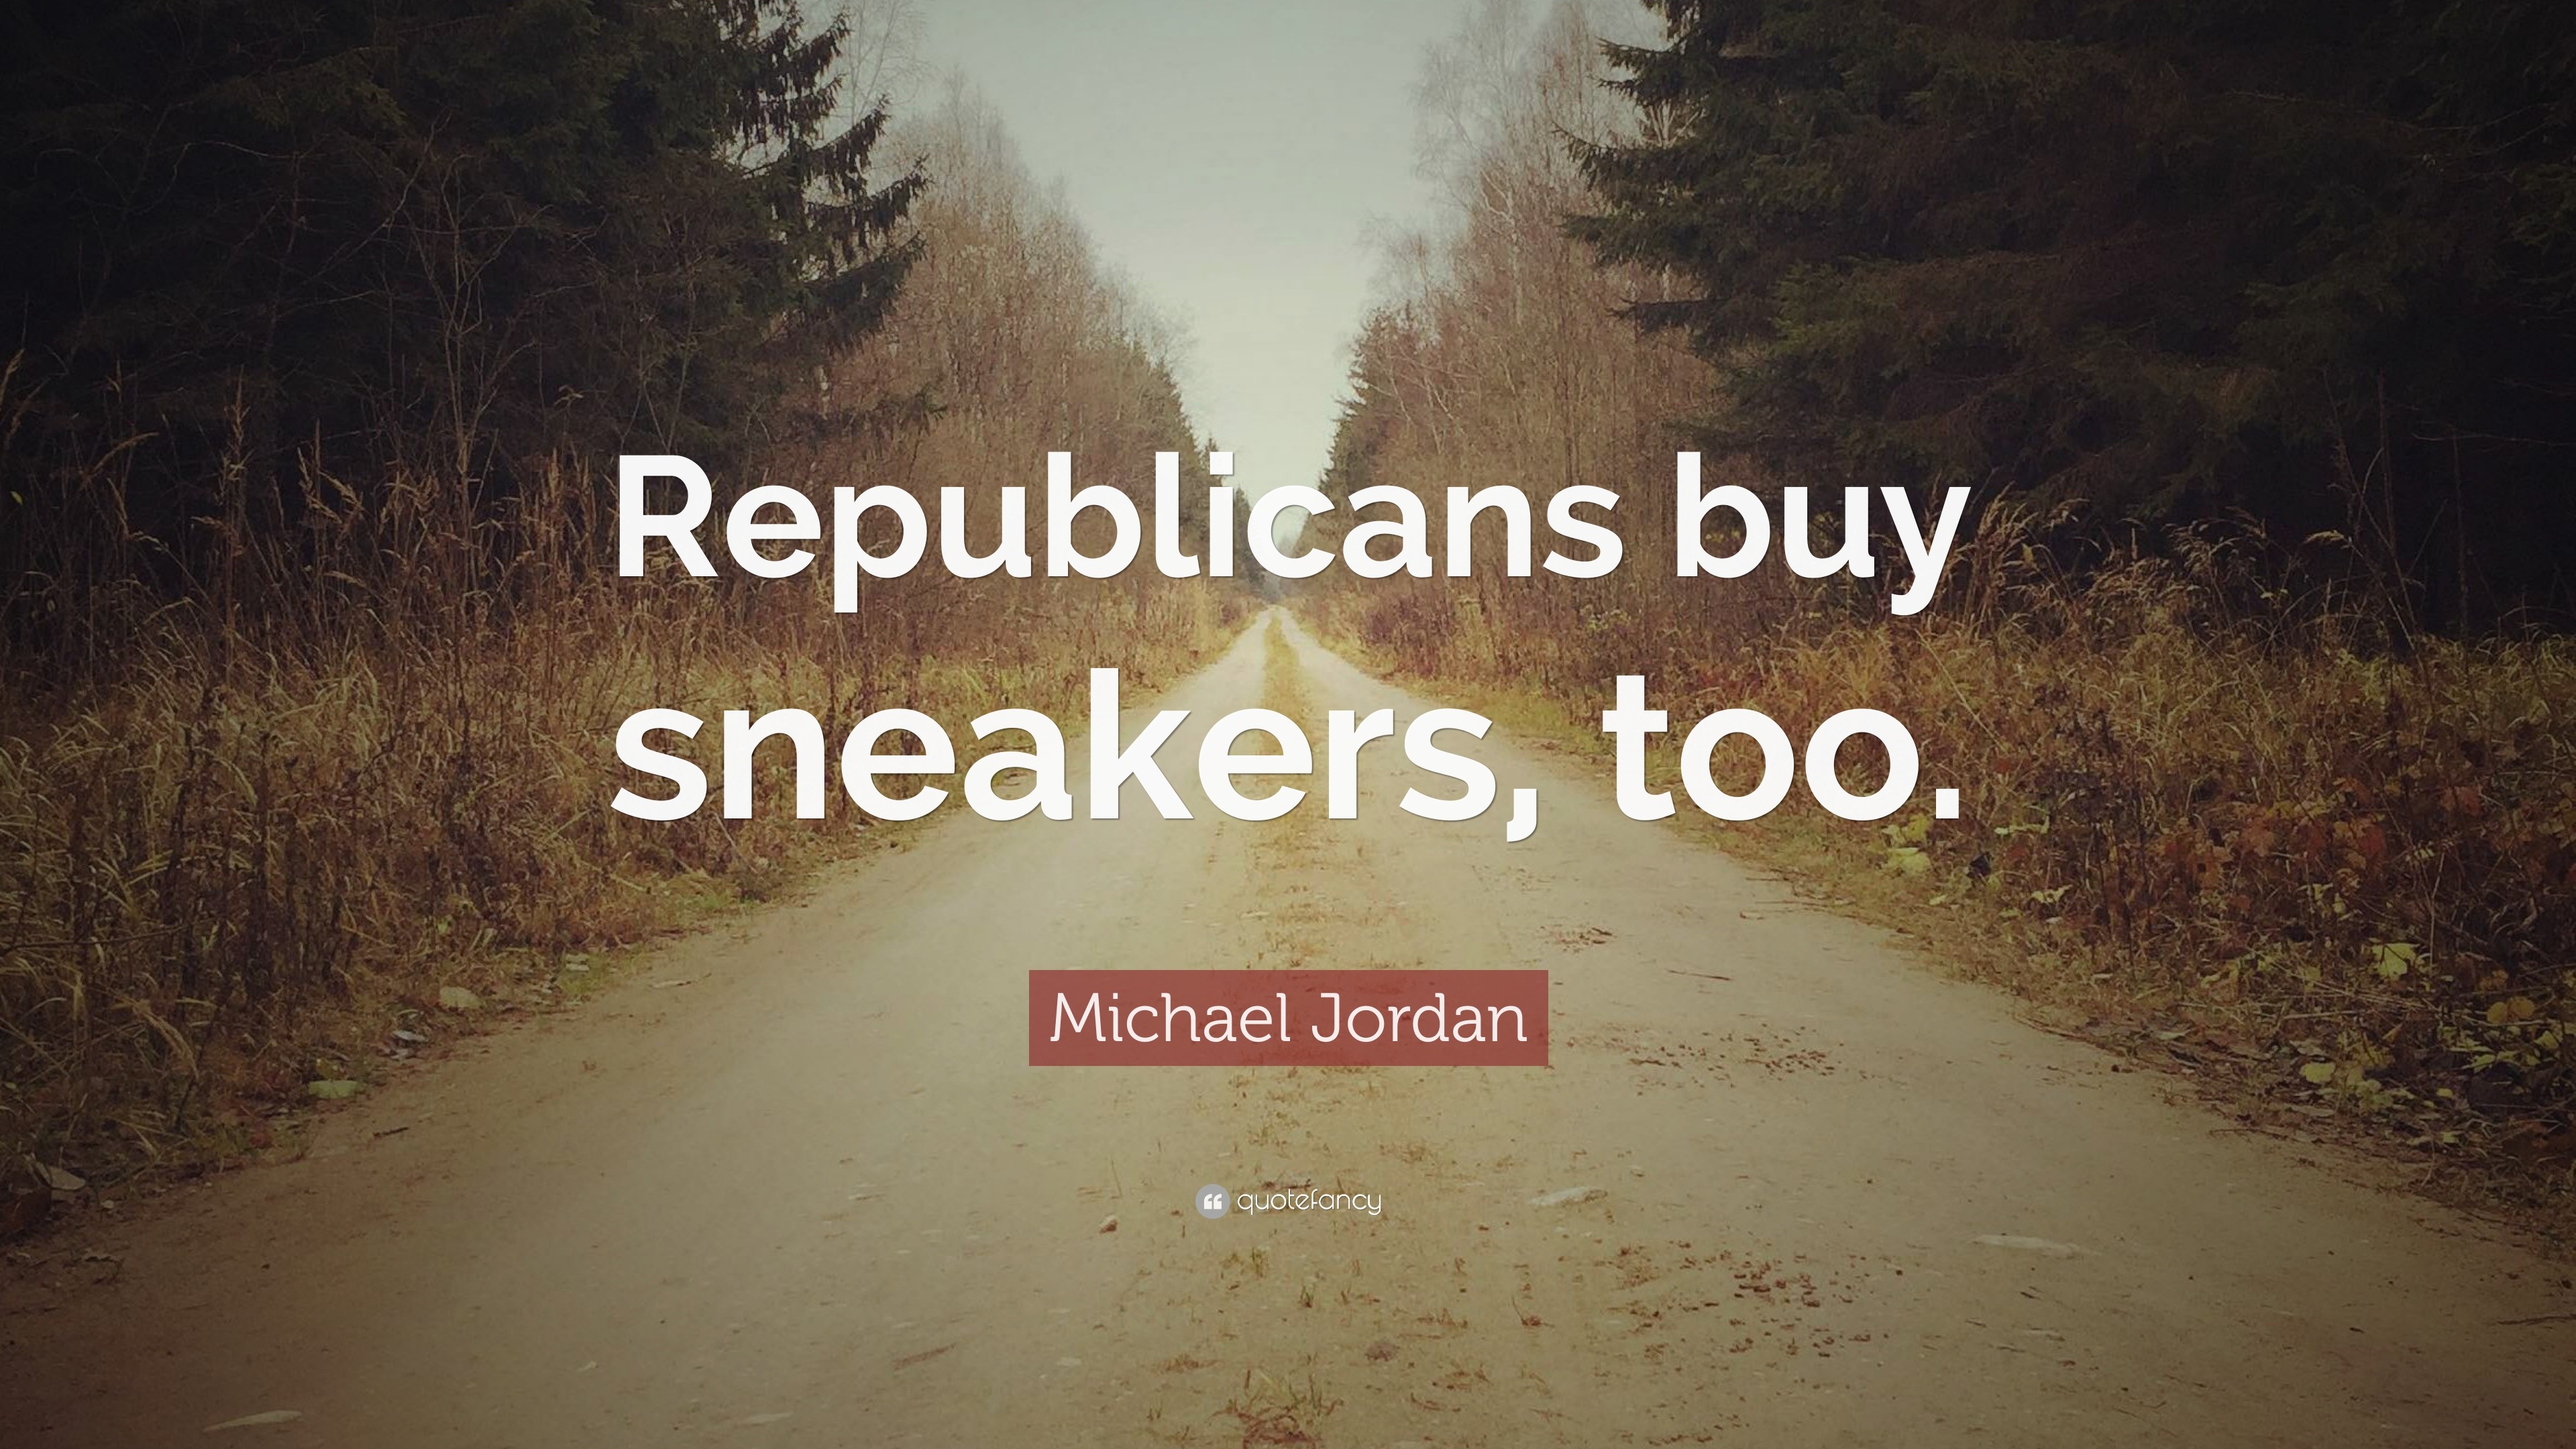 michael jordan republicans buy sneakers too